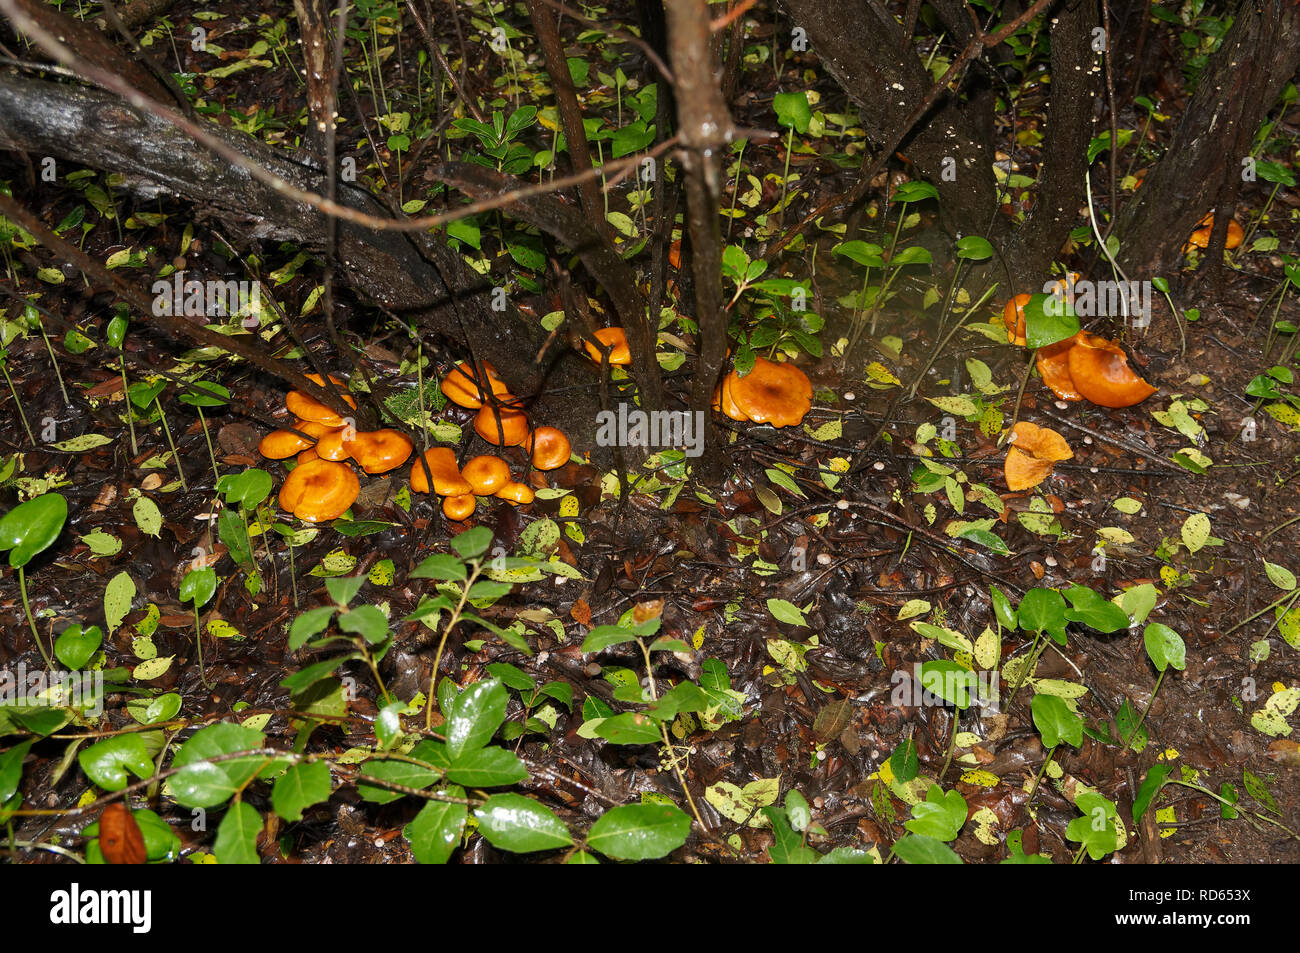 Omphalotus olearius, bekannt als der Jack-o'-Lantern Pilz, ist ein giftiges orange Pilz. Im Süden von Frankreich, Var. Stockfoto